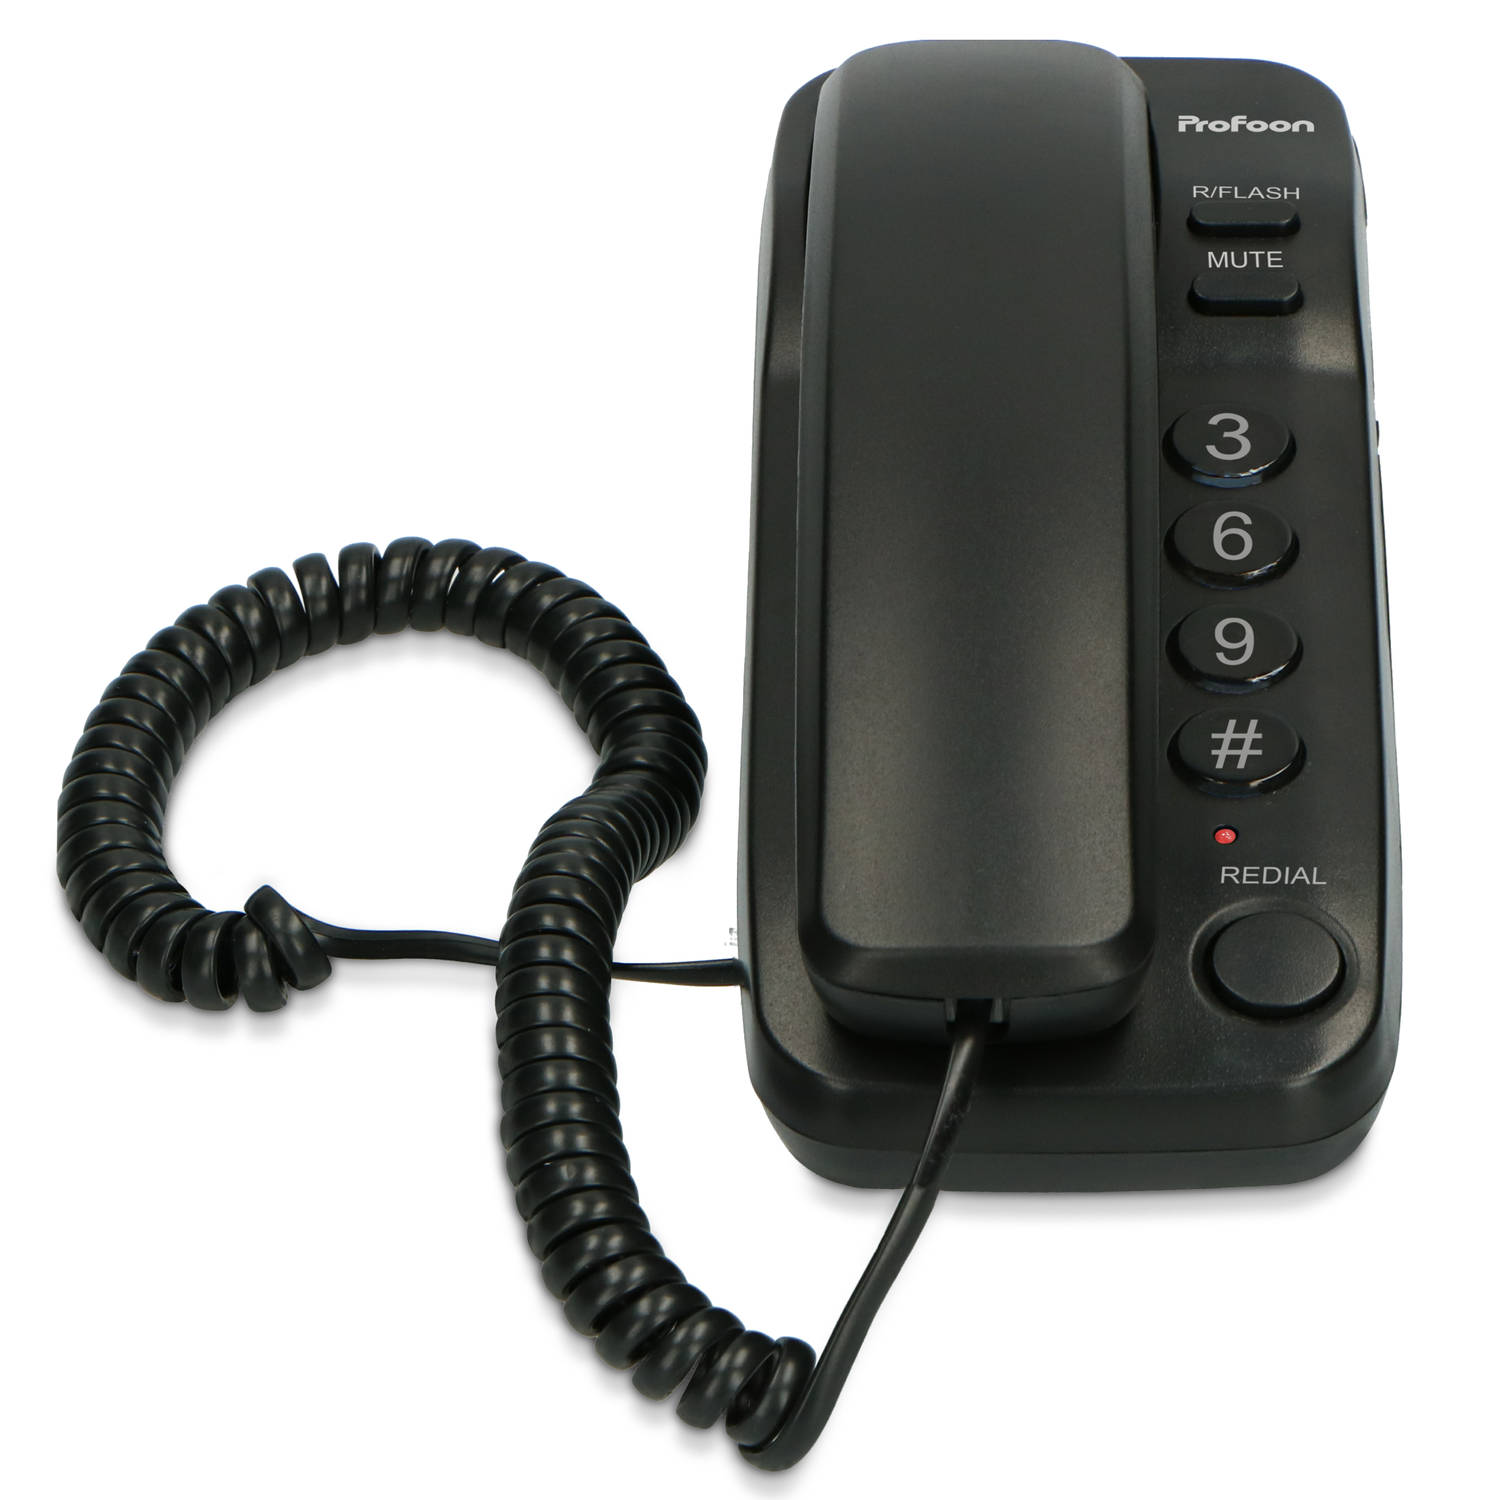 Profoon Tx-115 Compacte Bedrade Telefoon, Antraciet